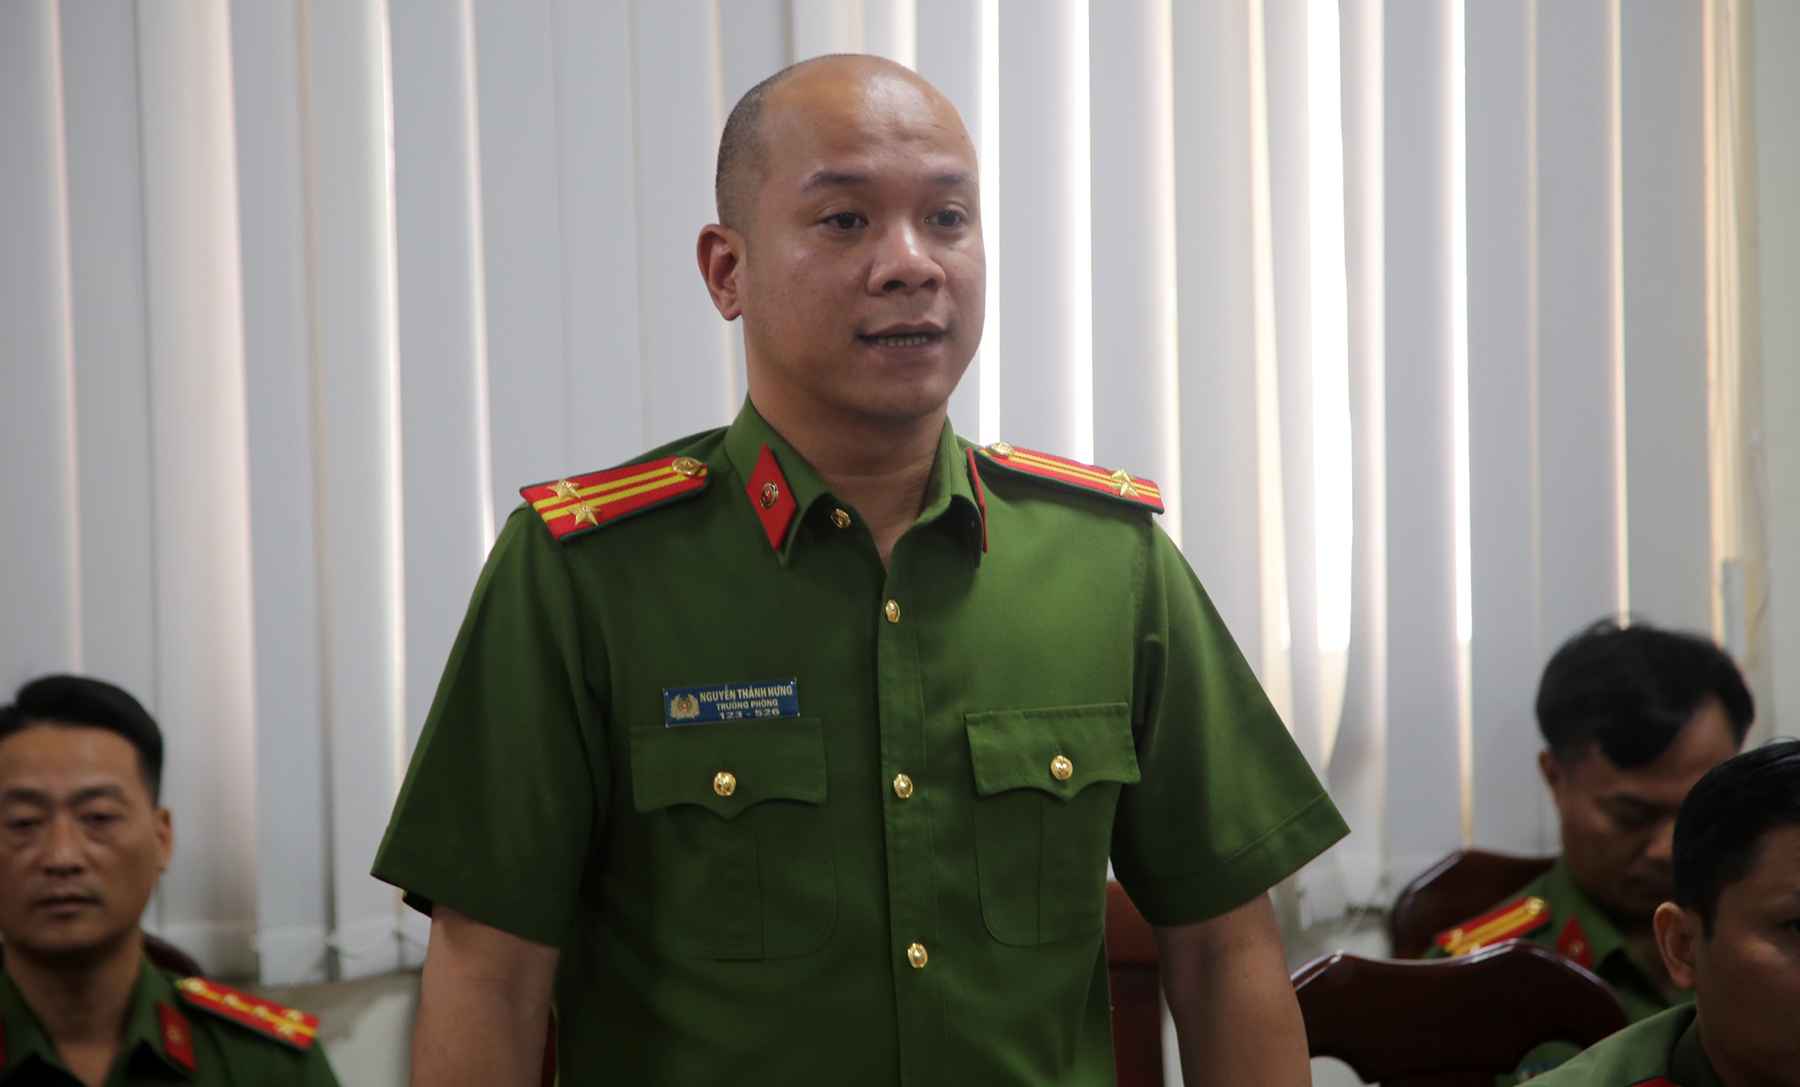 Trung tá Nguyễn Thành Hưng, Trưởng phòng Cảnh sát Hình sự, tại buổi họp báo chiều 9/1. Ảnh: Quốc Thắng